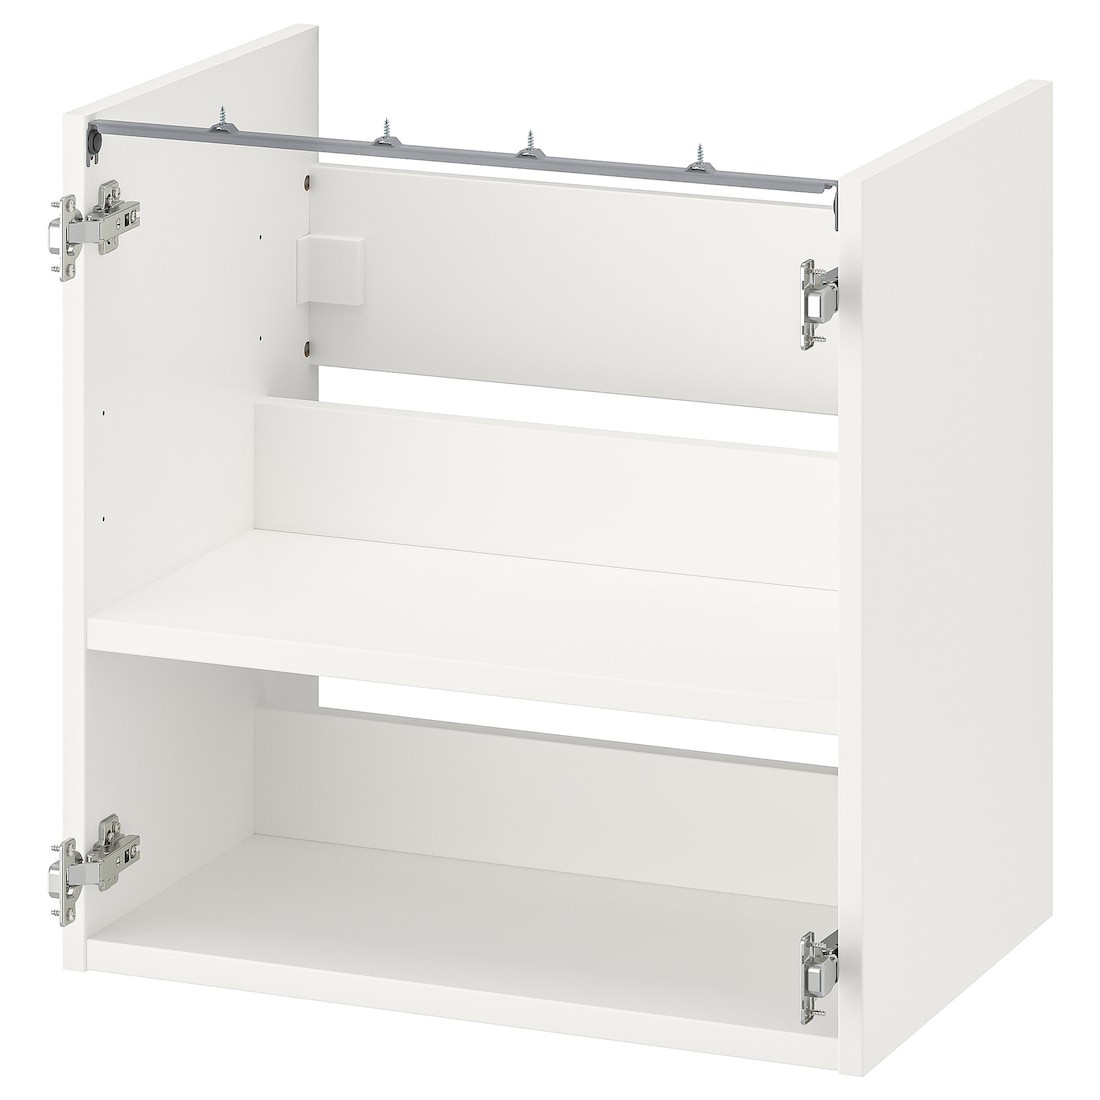 IKEA ENHET ЭНХЕТ Напольный шкаф под раковину с полкой, белый, 60x40x60 см 30440465 304.404.65